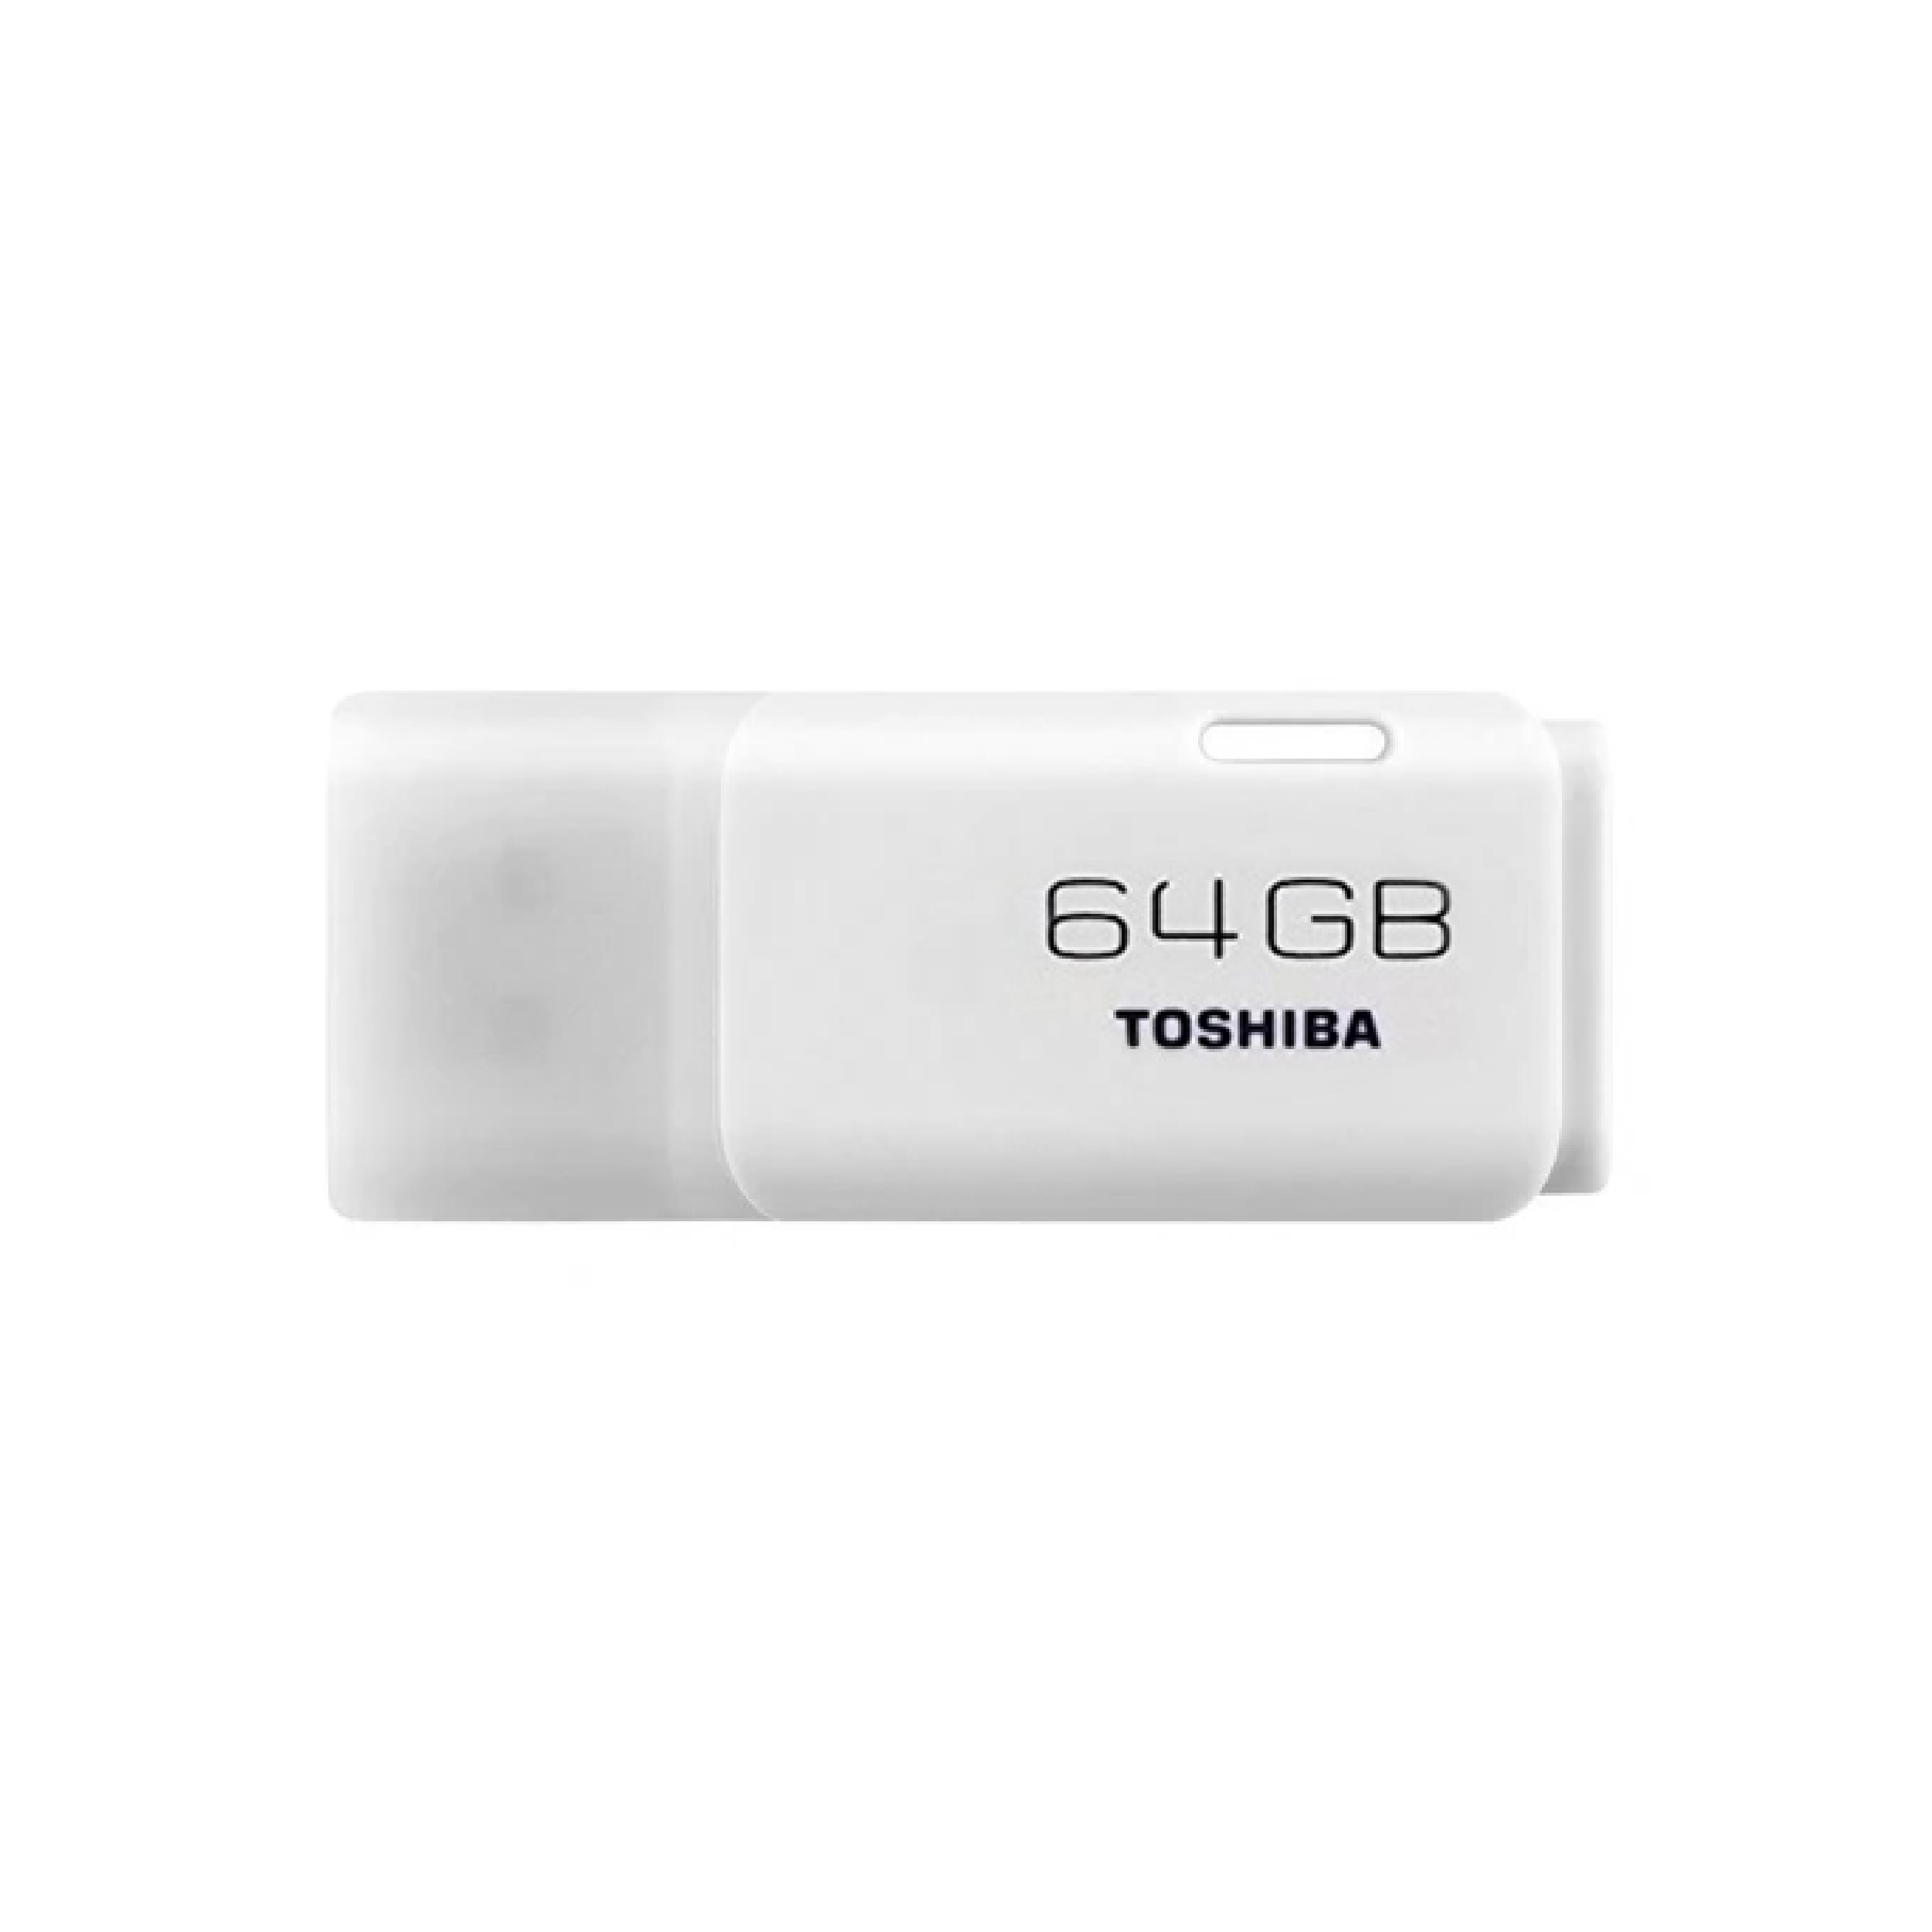 Toshiba TransMemory, 64GB, USB 2.0, USB Flash Drive, White (U202)